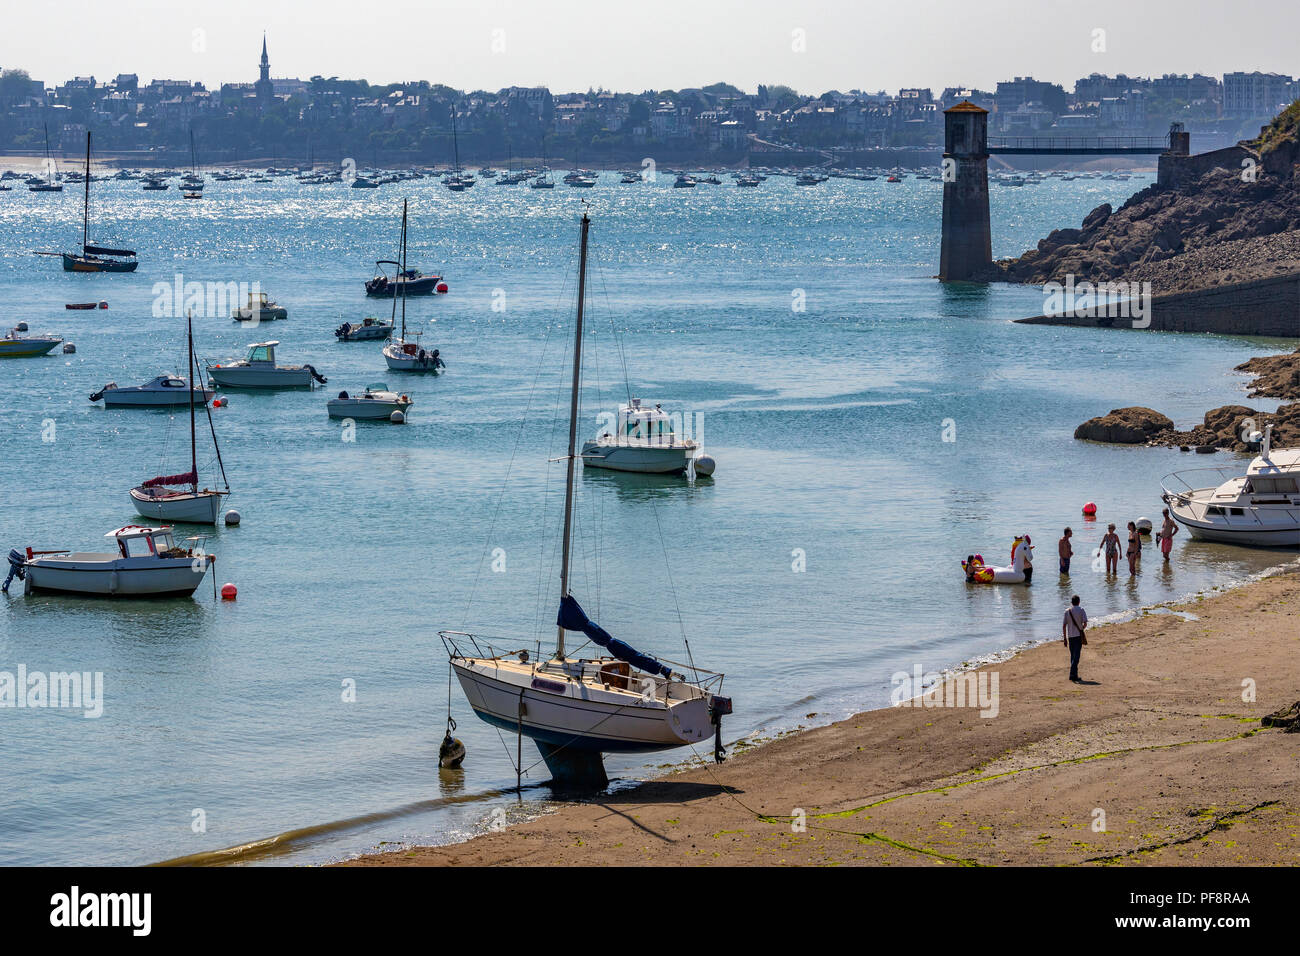 La marée basse à la Waterfront Solidor dans le port de Saint Malo sur la côte nord de la Bretagne en France Banque D'Images